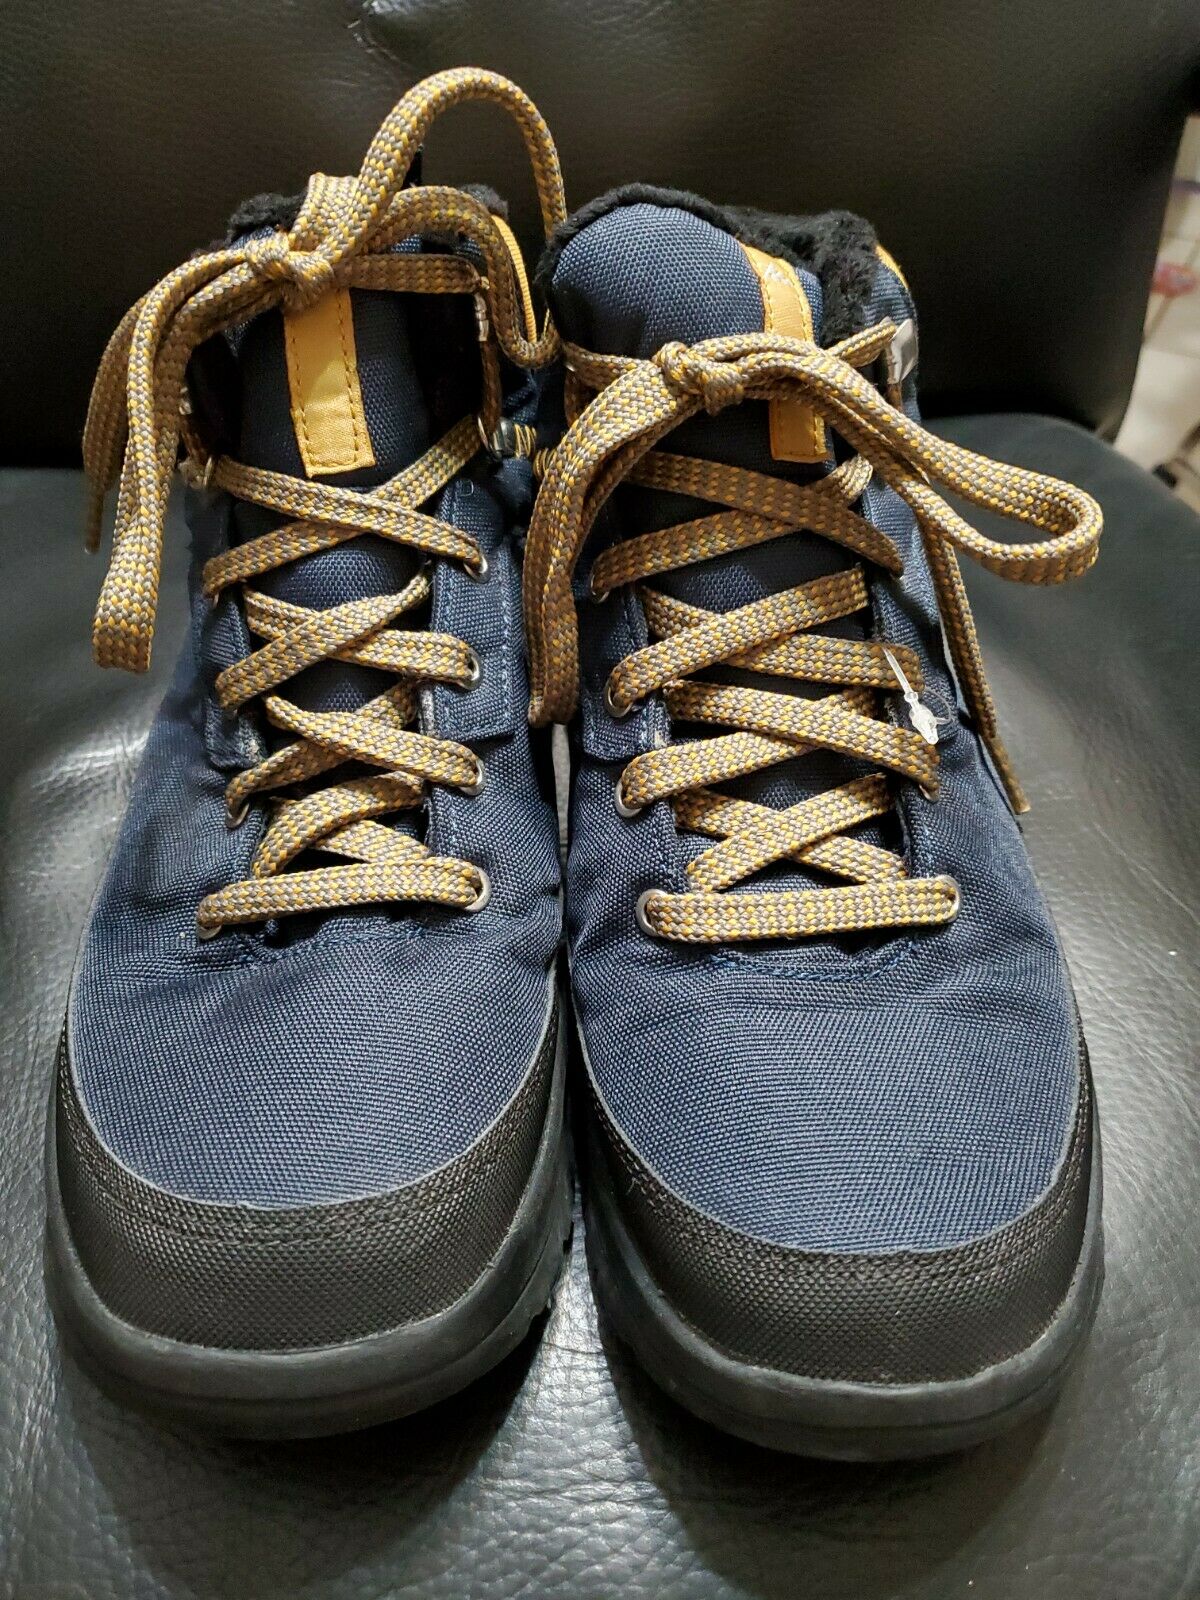 Men's Snow Hiking Shoes Outdoor Shoes Quechua sh100 warm mid m blue w 9 m 7.5